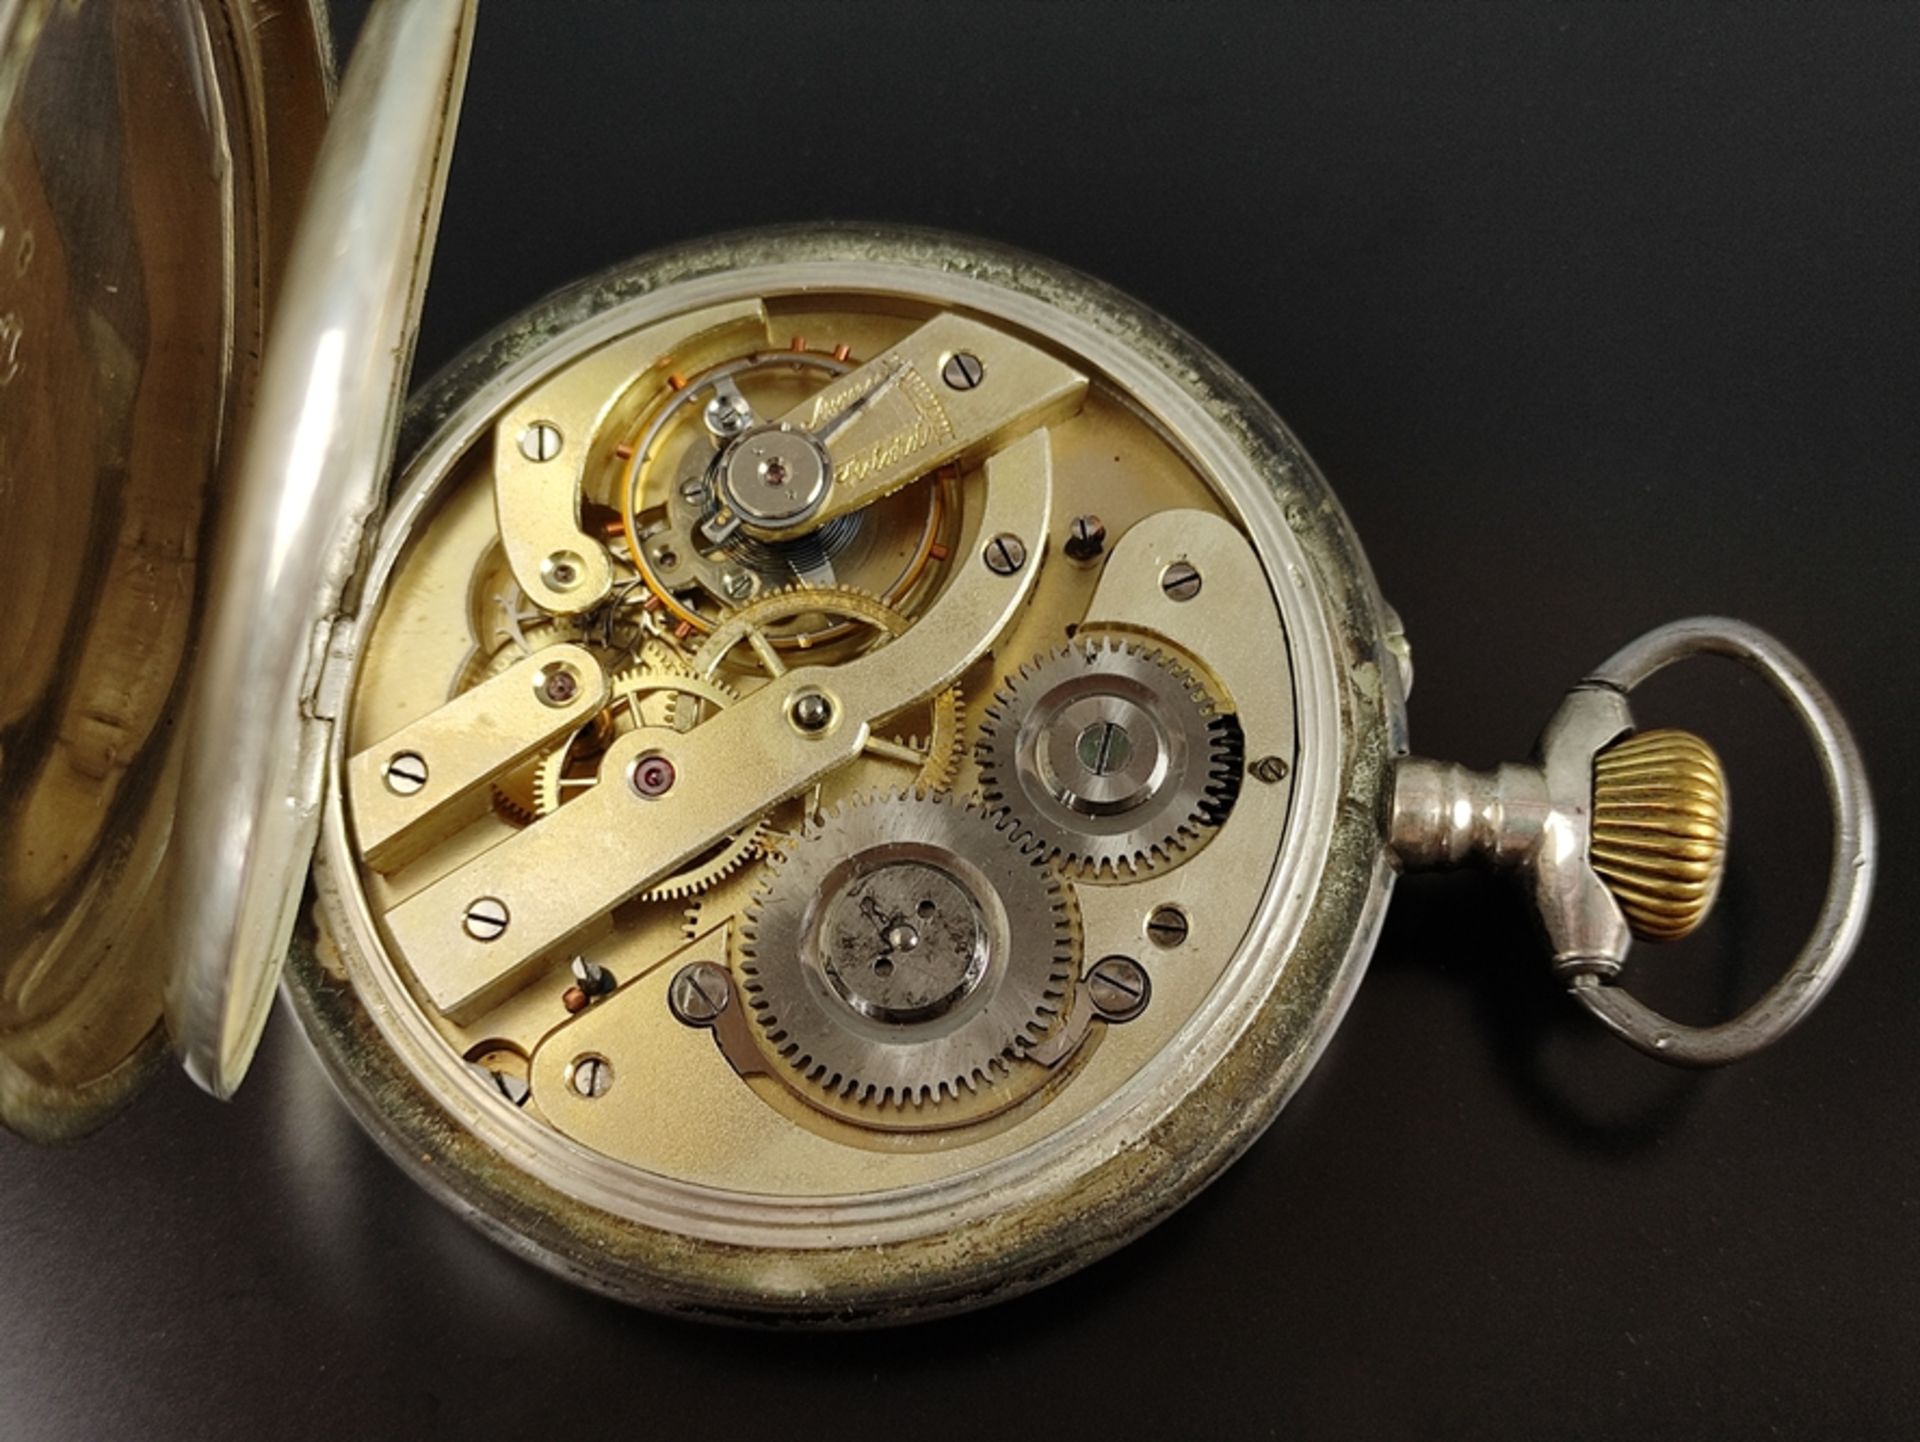 Große Taschenuhr/Eisenbahner-Uhr, "Regulateur" mit kleiner Sekunde, Ziffernblatt mit römischen Ziff - Bild 2 aus 7